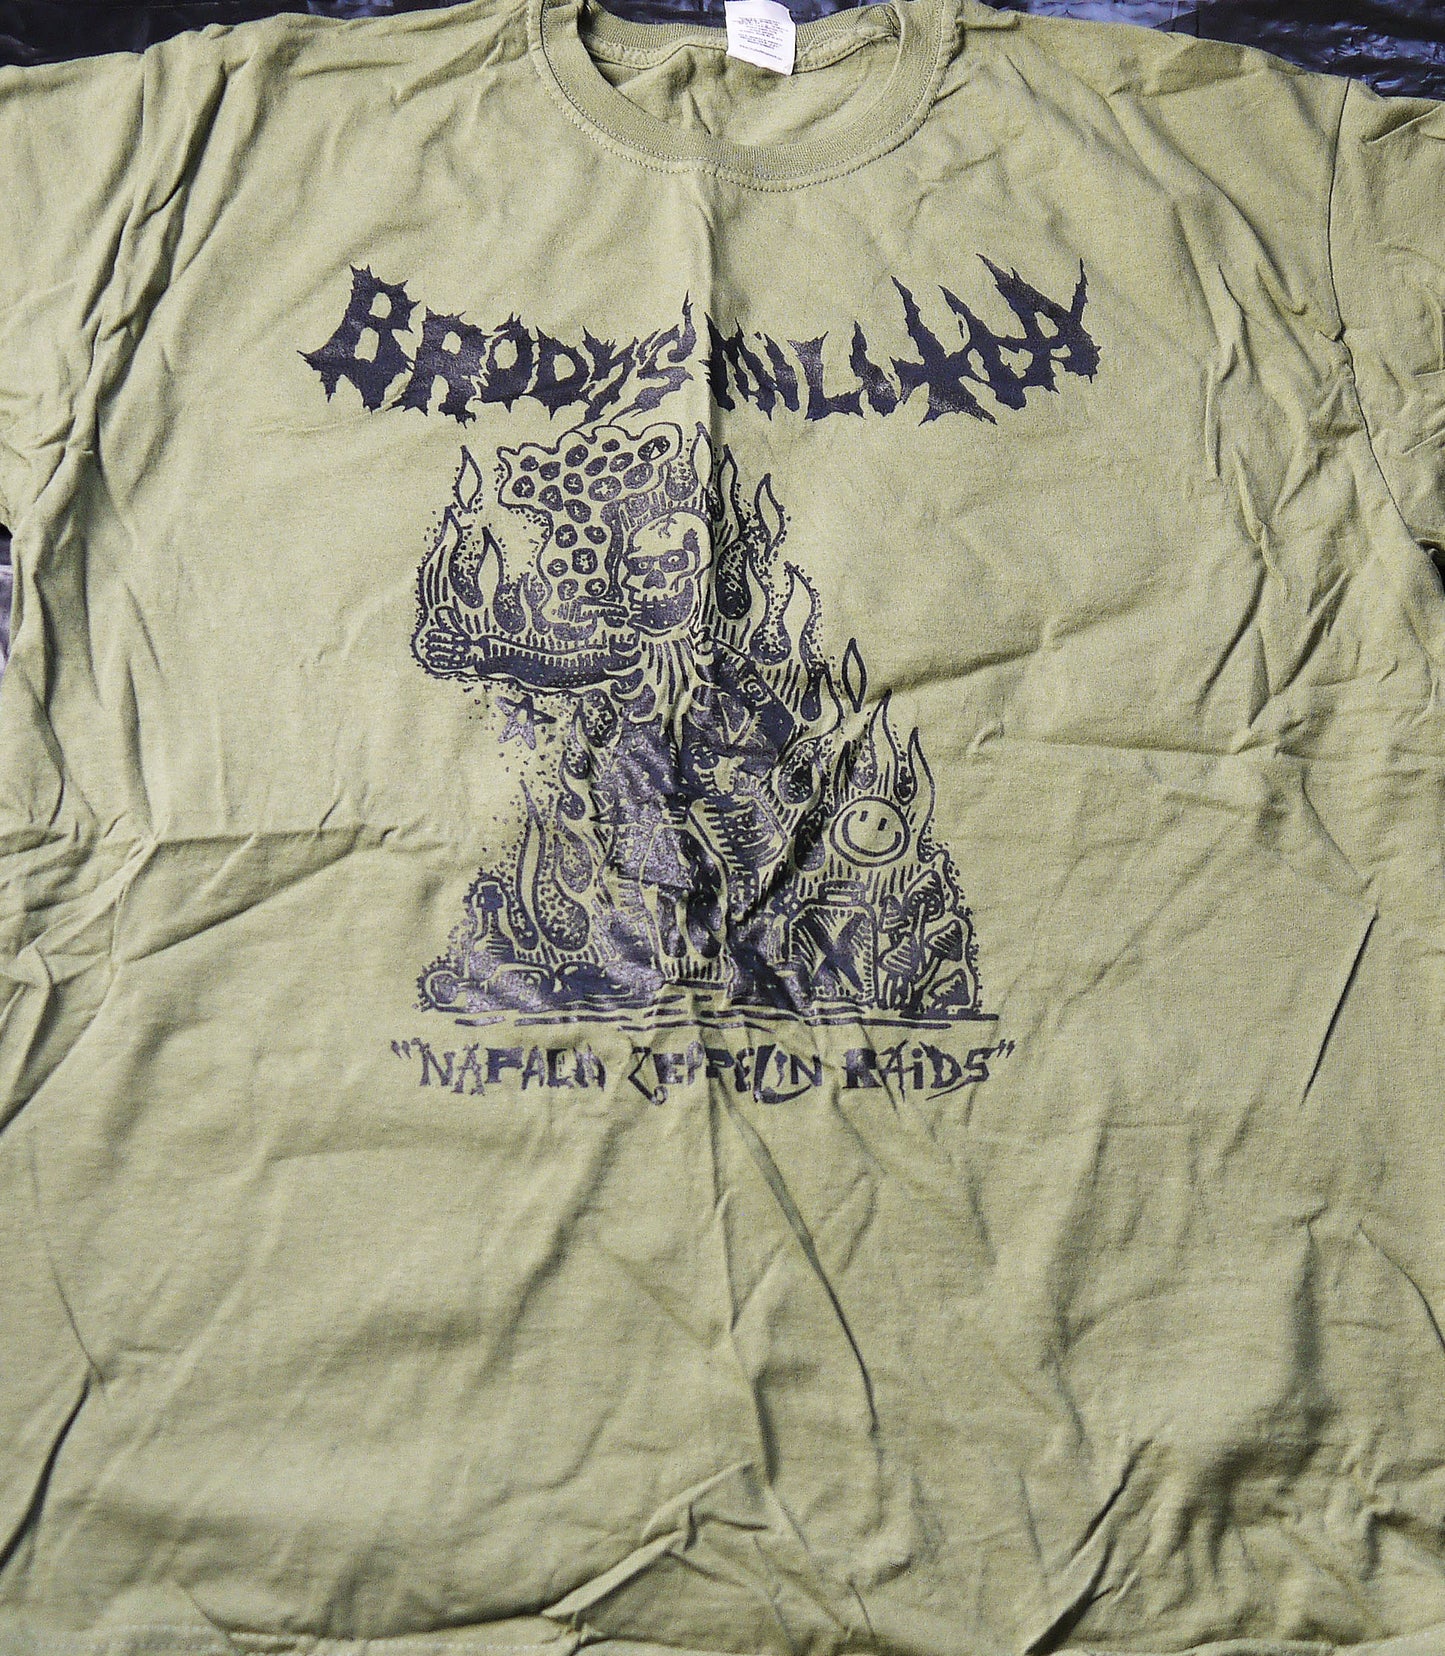 BRODY'S MILITIA - T-shirt